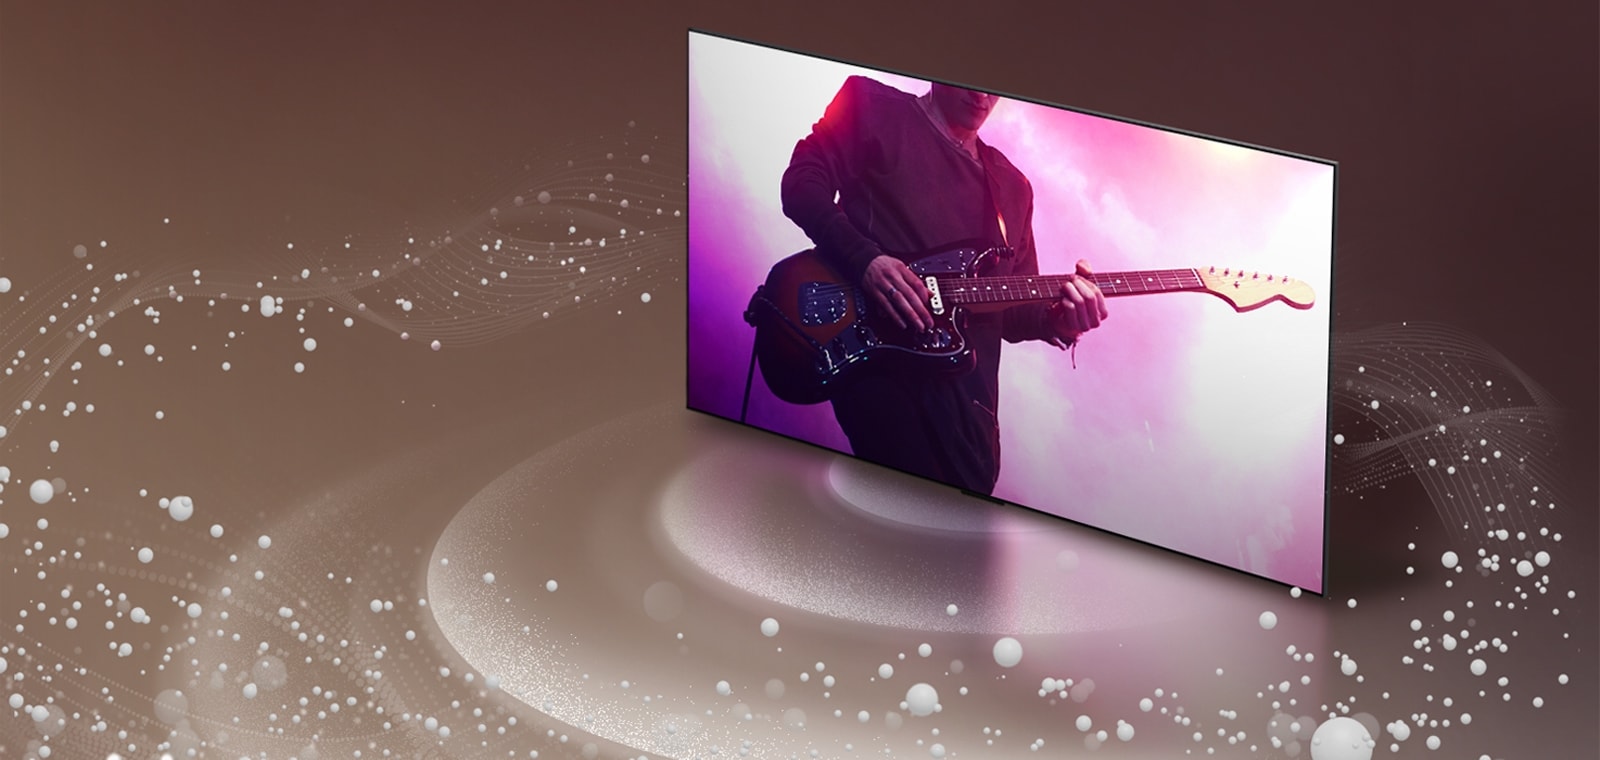 LG OLED TV met geluidsbubbels en golven die uit het scherm komen en de ruimte vullen.